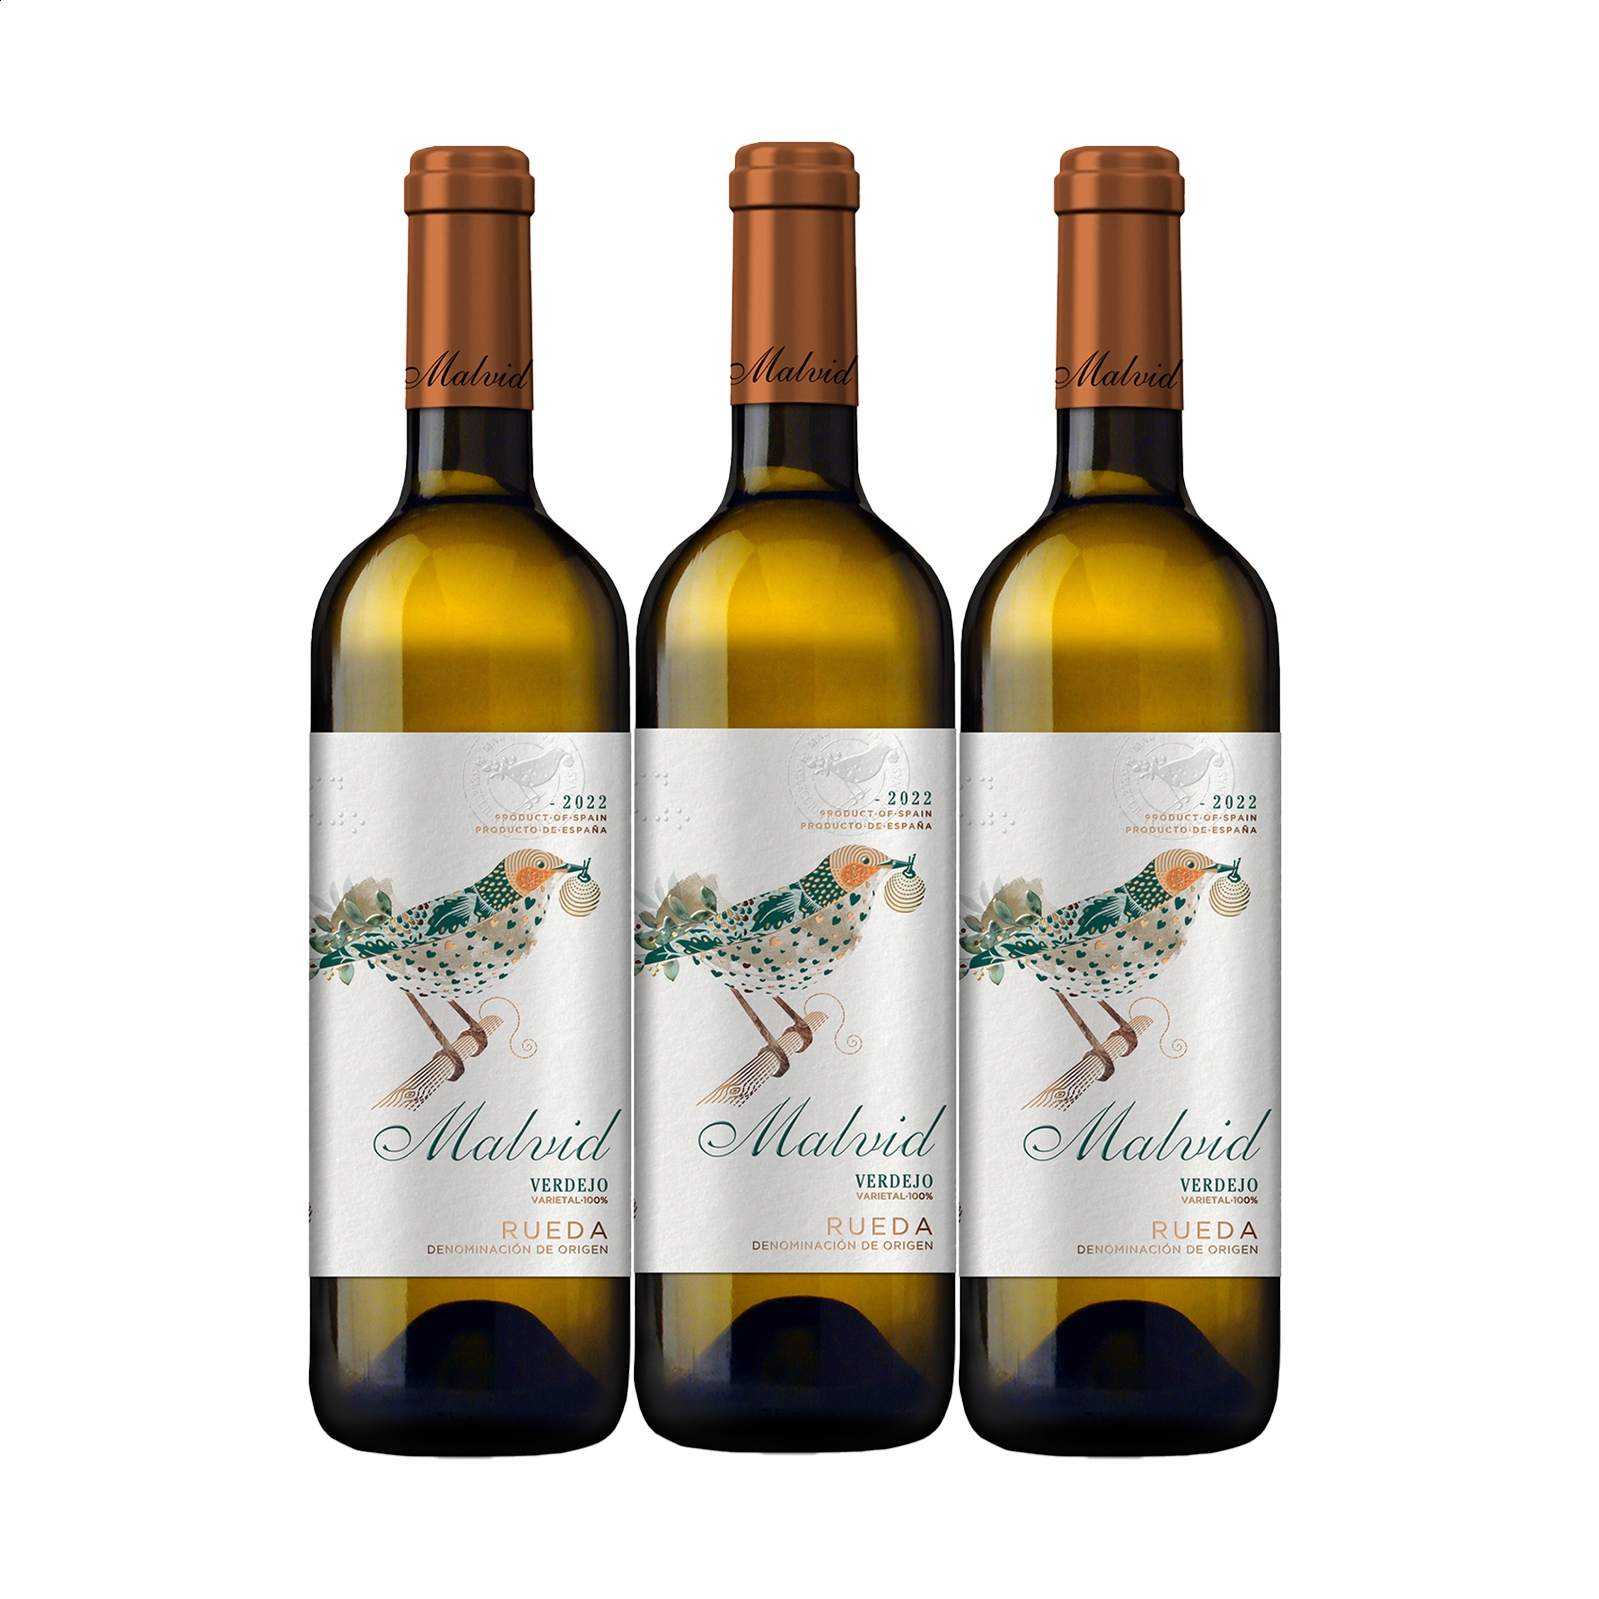 Malvid - Vino blanco Verdejo 2022 D.O. Rueda 75cl, 3uds